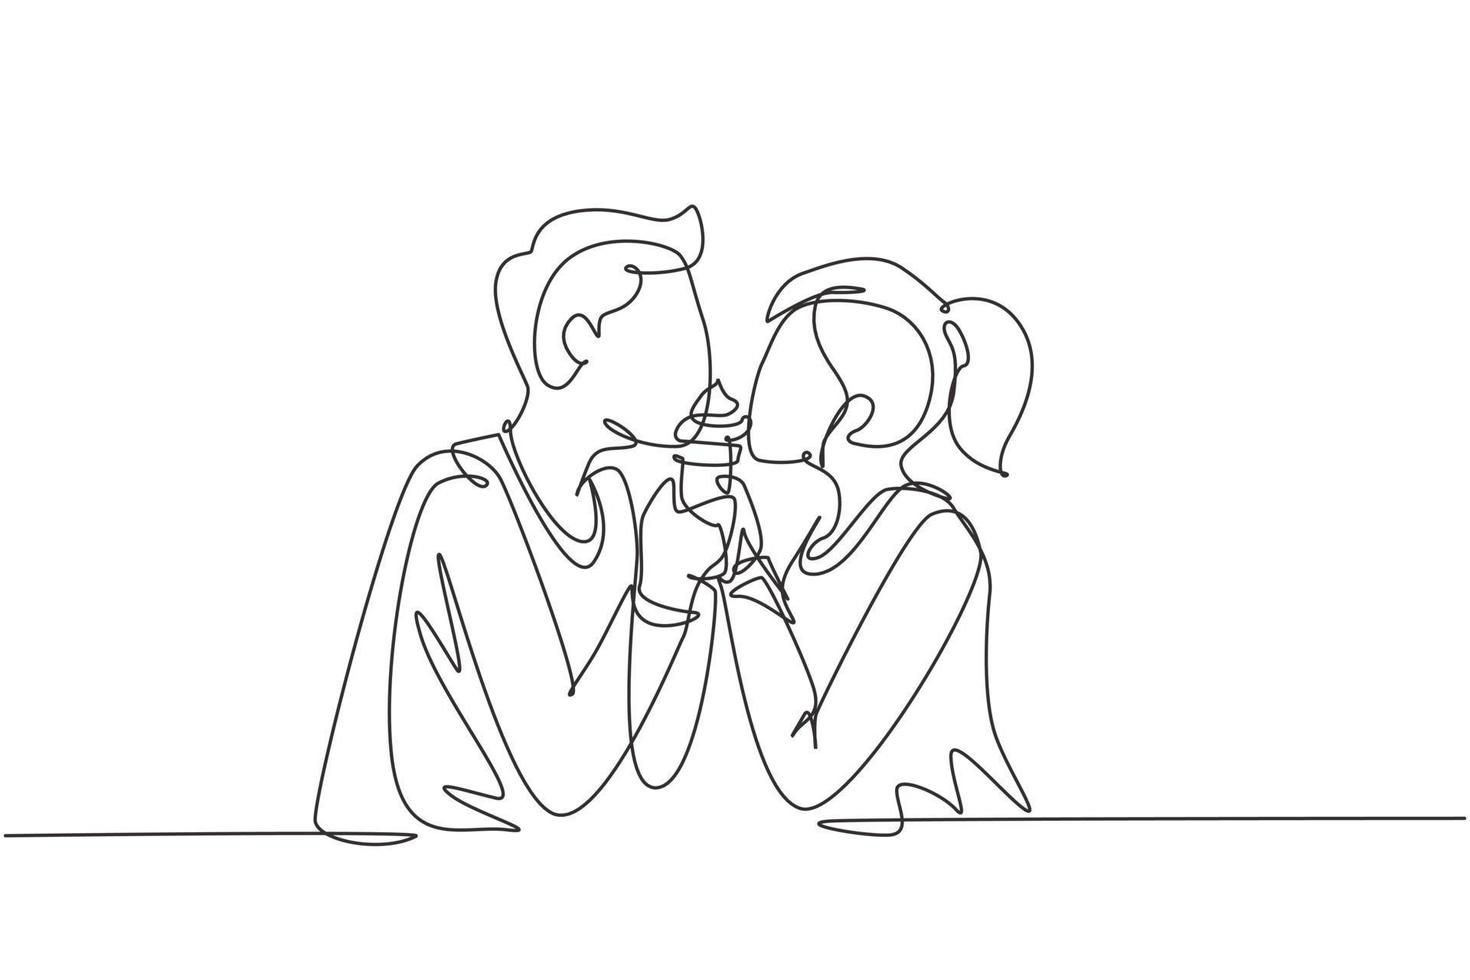 única linha contínua desenho jovem casal lindo compartilhando casquinha de sorvete. comemore aniversários e desfrute de um almoço romântico no restaurante. ilustração em vetor desenho gráfico dinâmico de uma linha